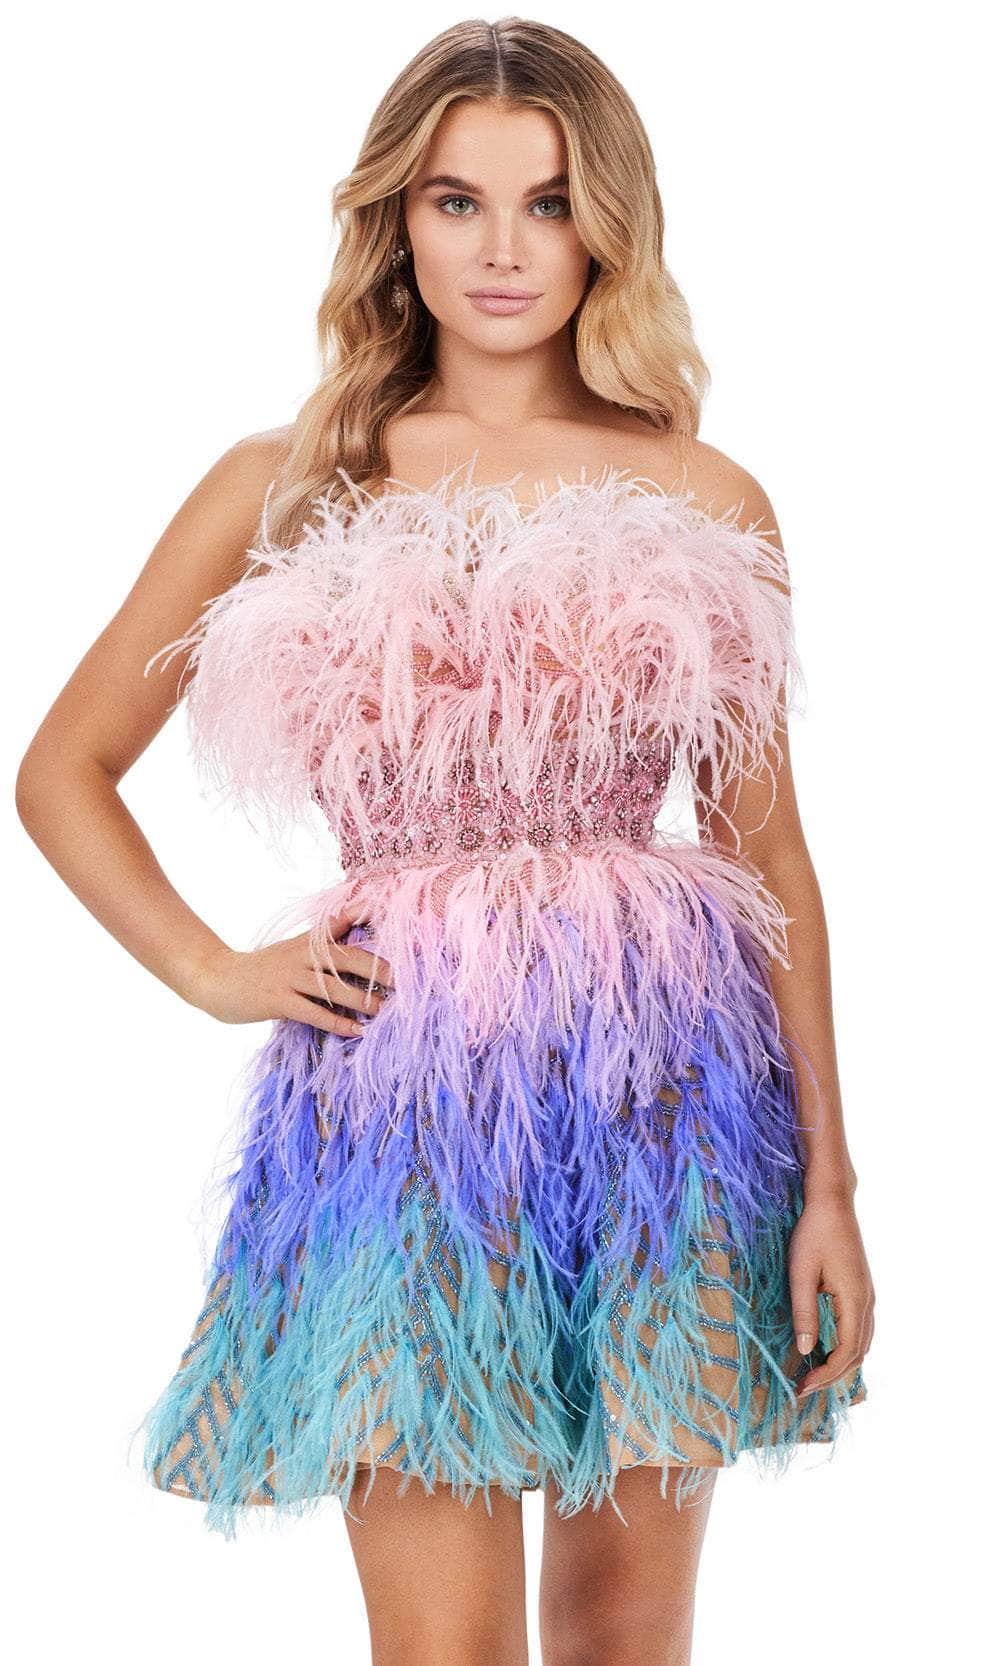 Image of Ashley Lauren 4670 - Strapless Embellished Cocktail Dress